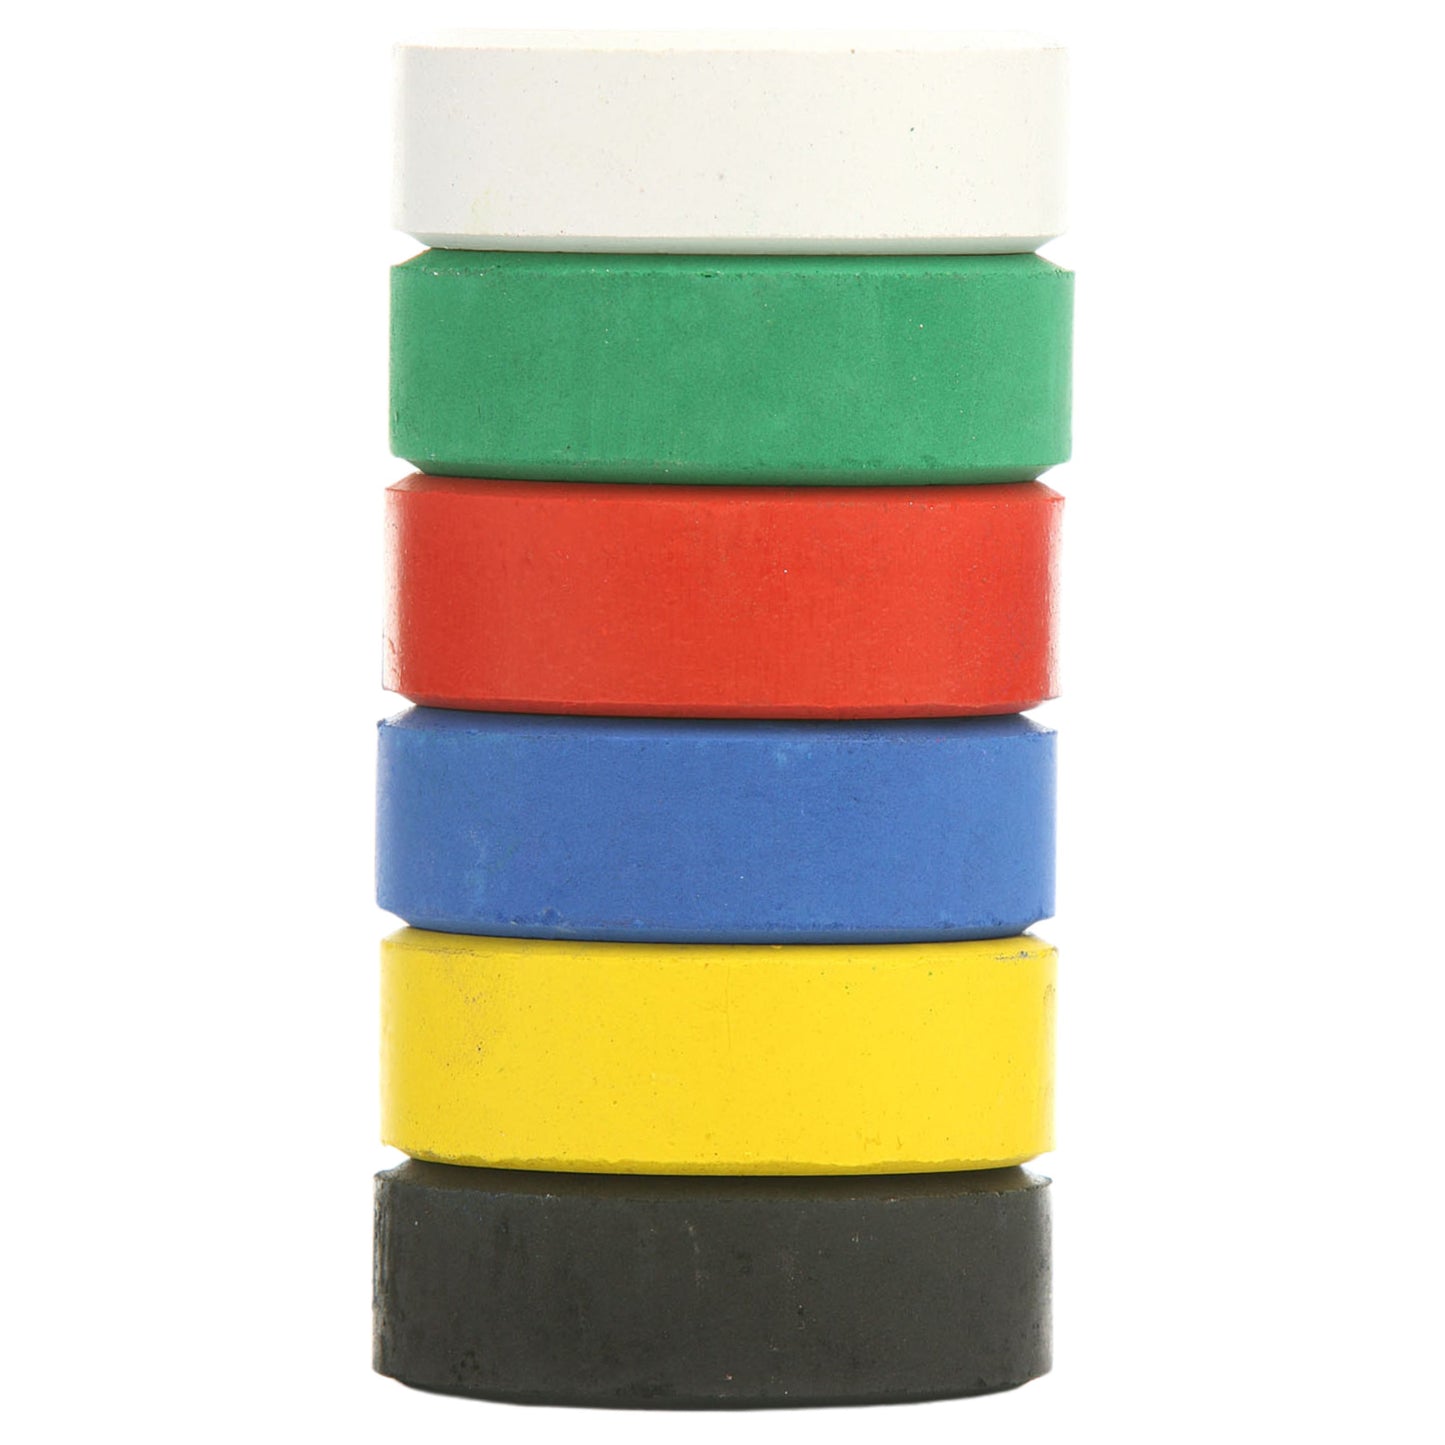 Colour Assortment Paint Block Packs of 6 Choose Colour